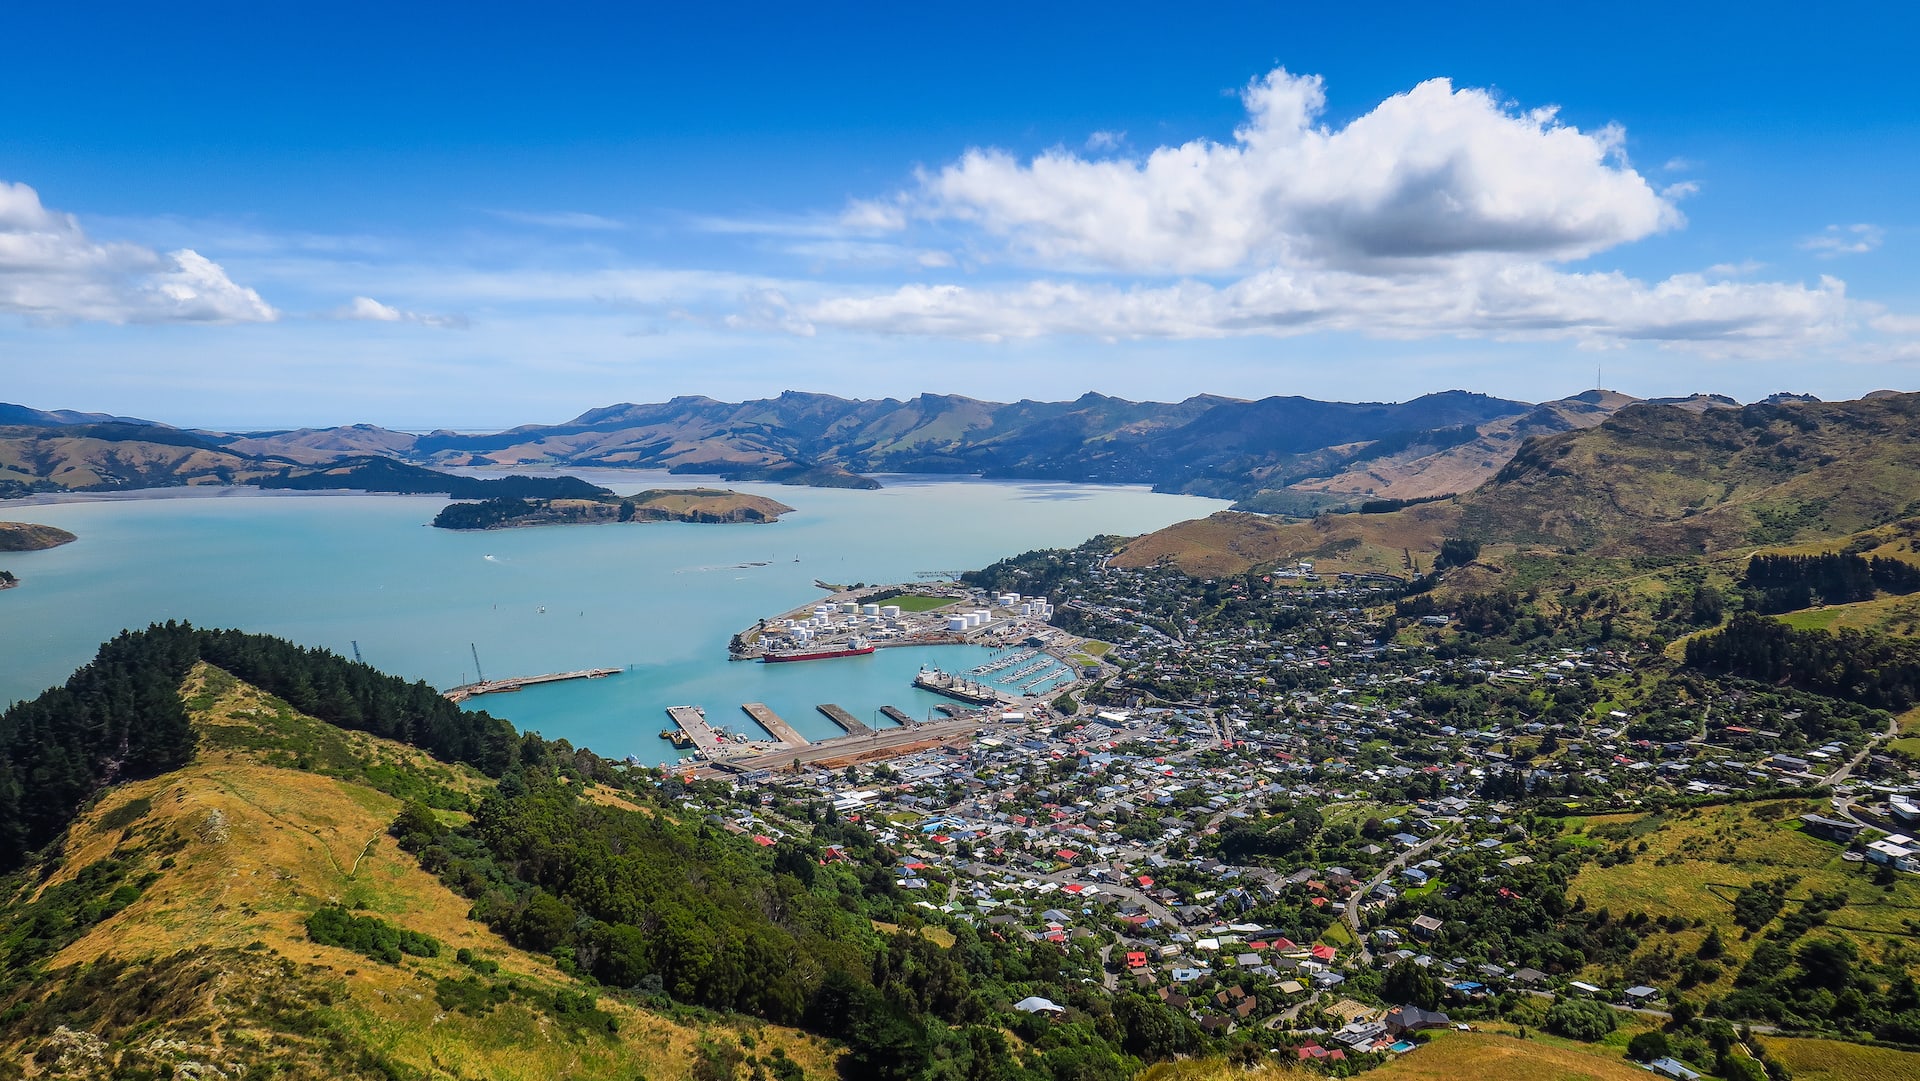 Christchurch New Zealand